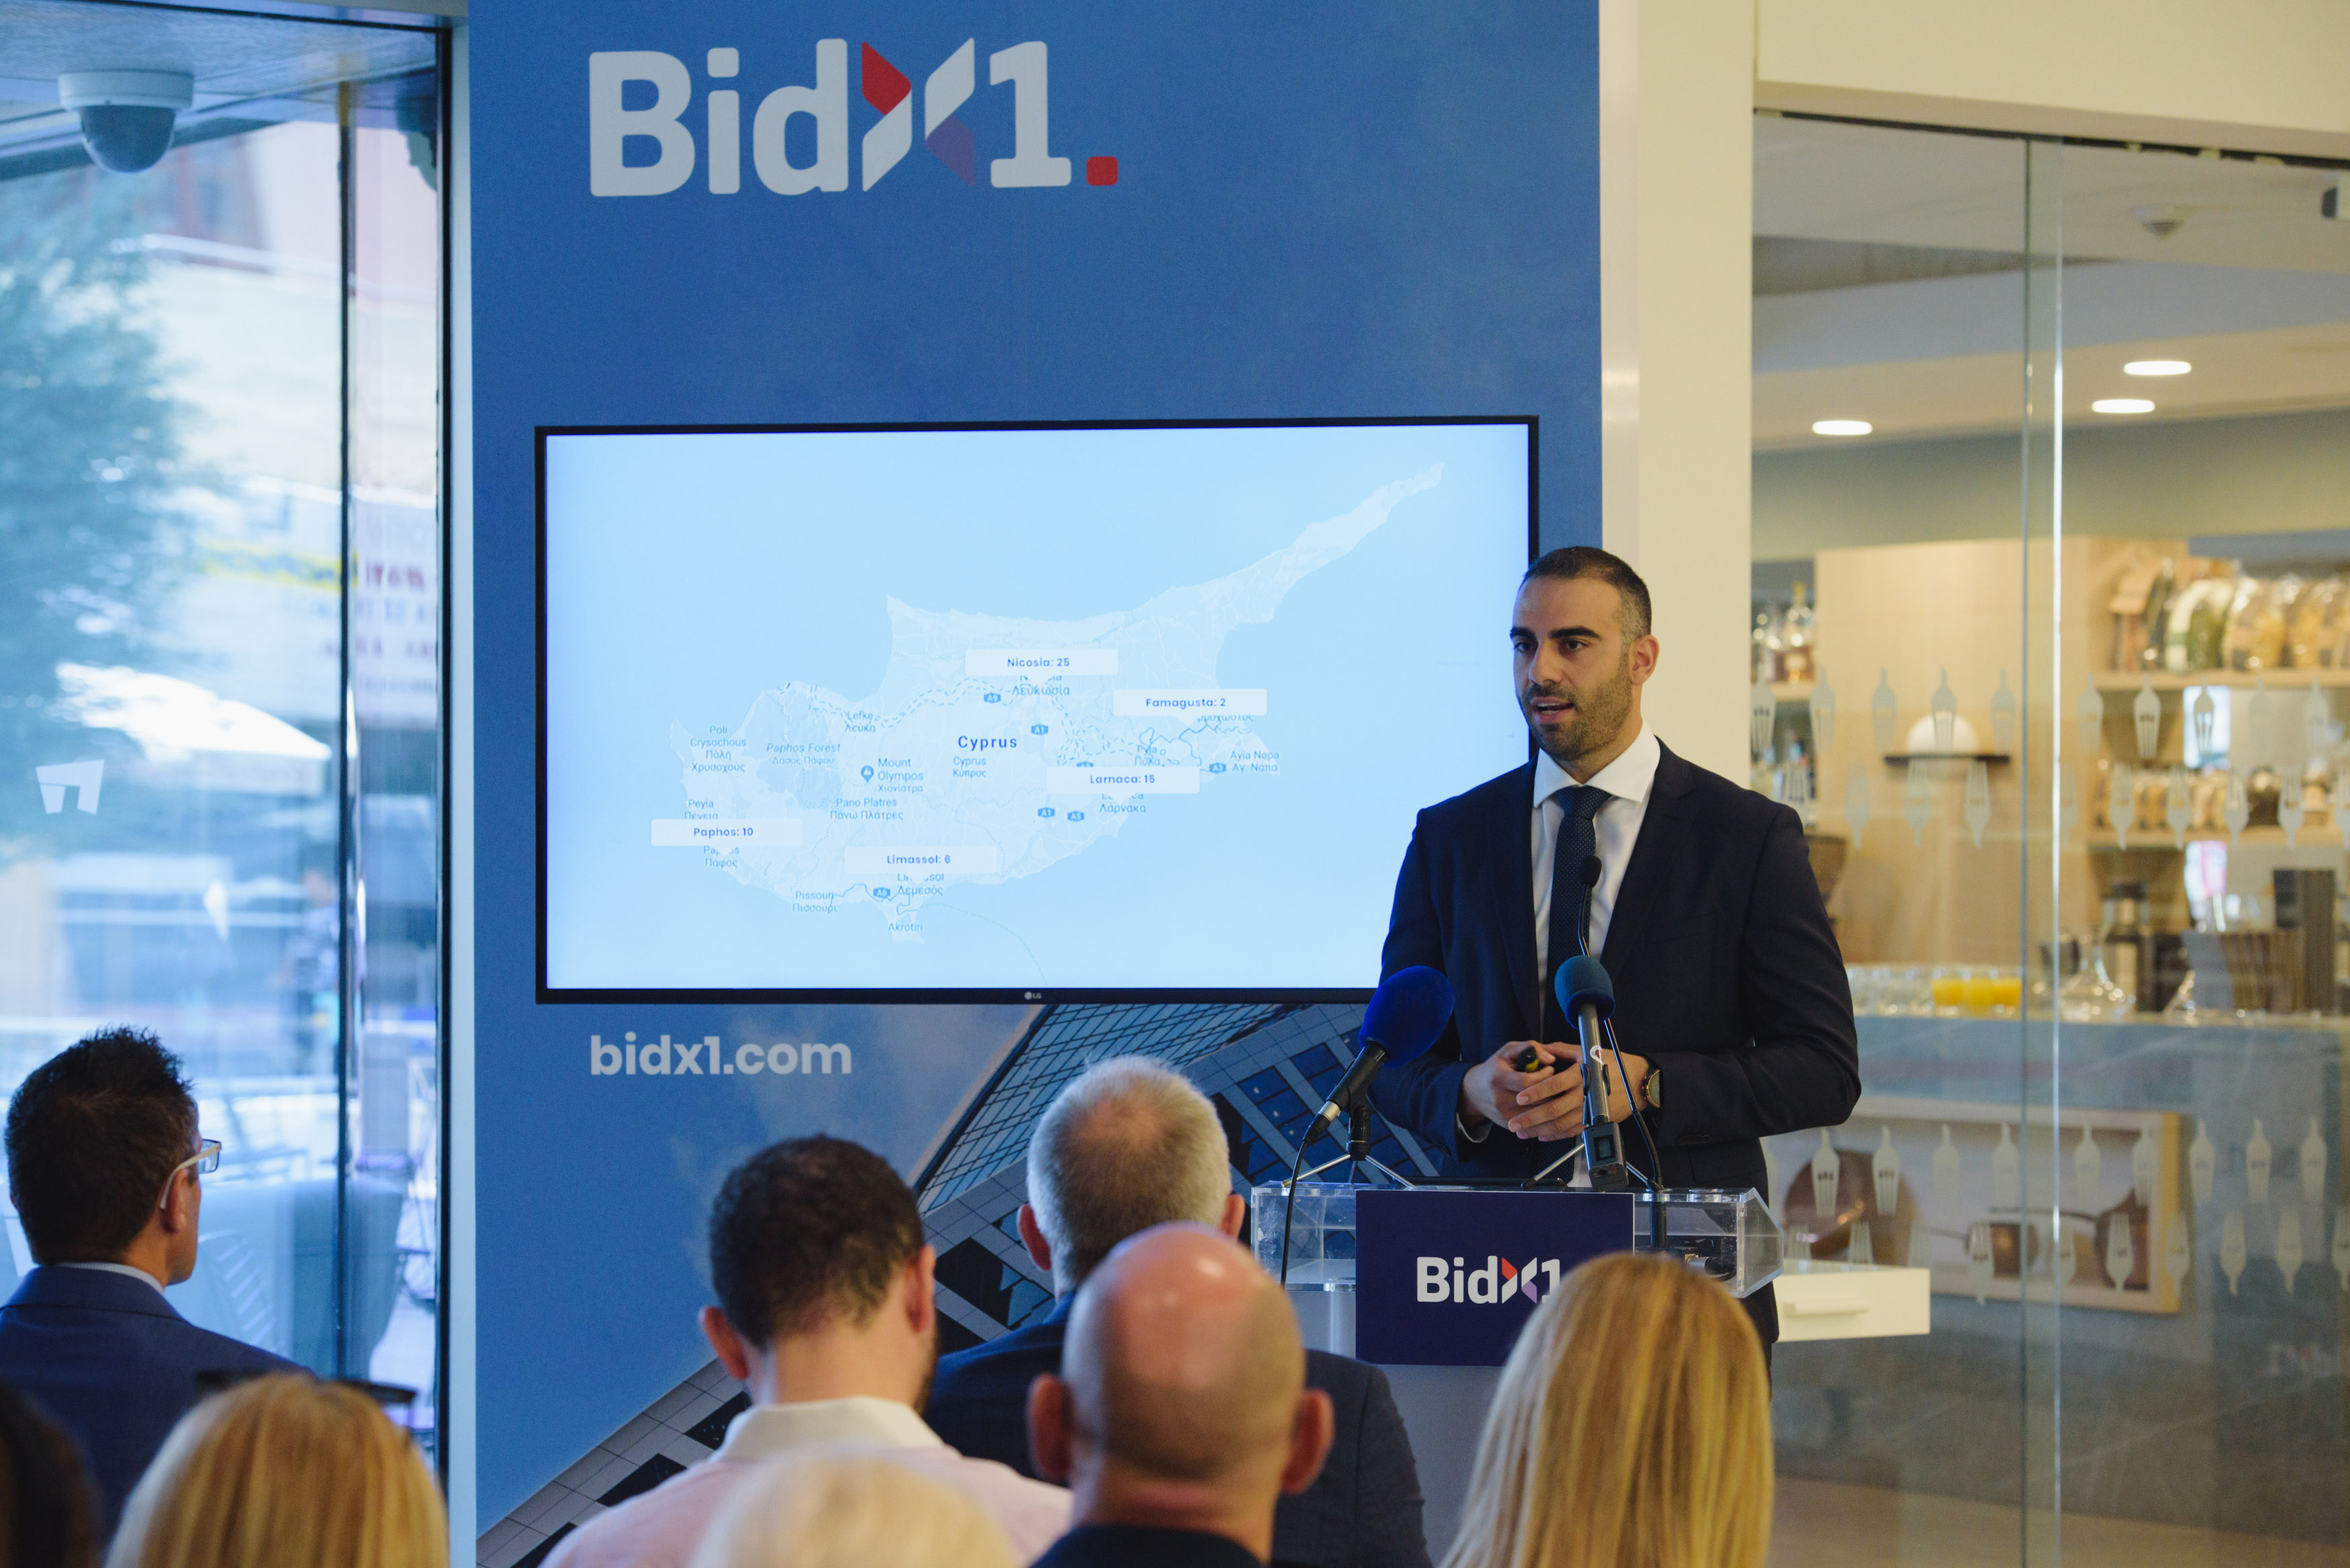 Αναγνώριση της BidX1 ανάμεσα στις πιο καινοτόμες εταιρείες ακινήτων της Ευρώπης